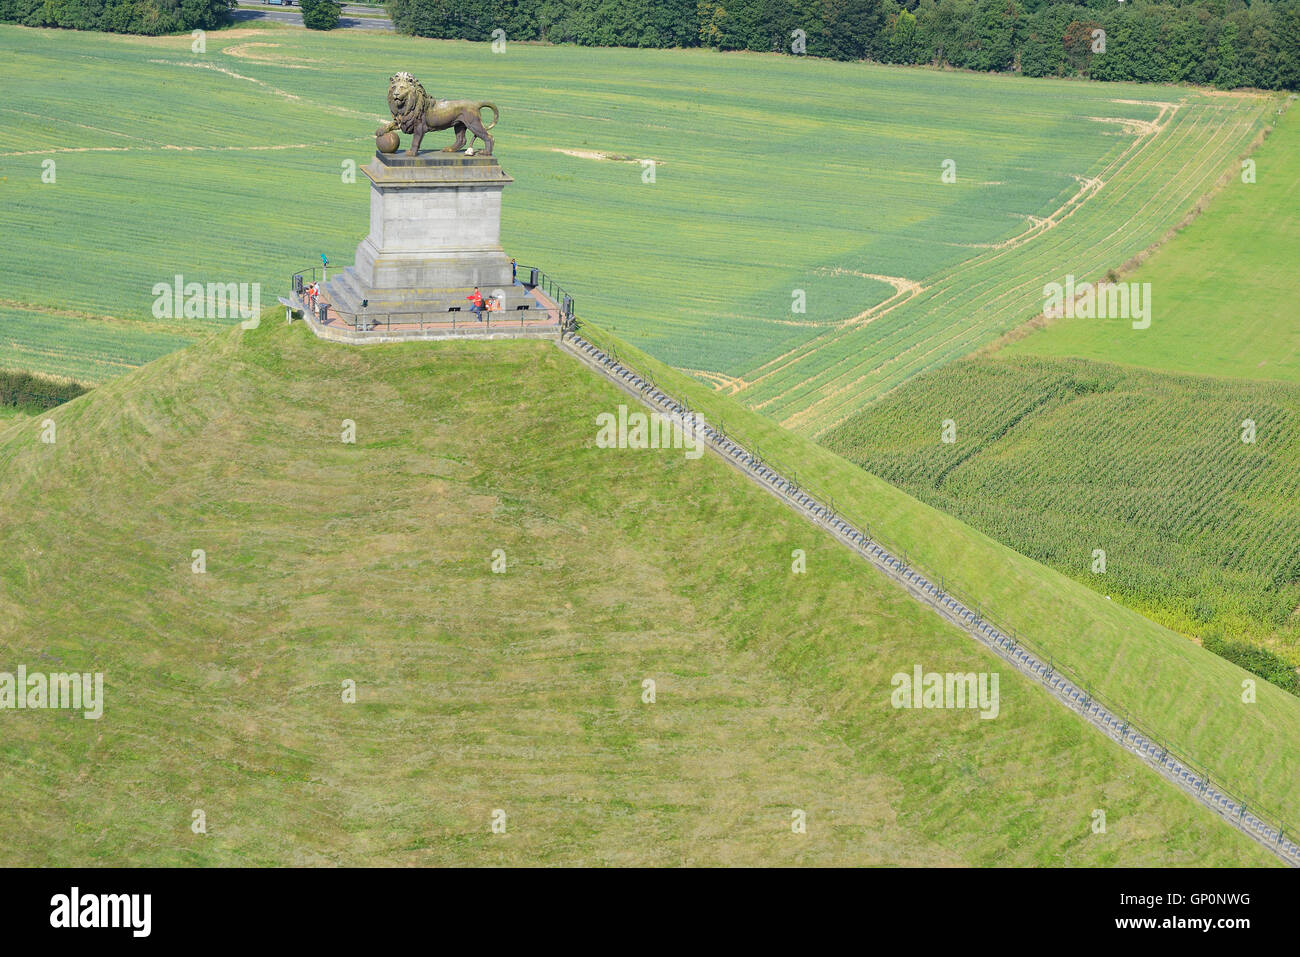 LUFTAUFNAHME. Löwenhügel, ein Denkmal auf dem Gelände des historischen Schlachtfeldes von Waterloo. Braine-l'Alleud, Wallonien, Belgien. Stockfoto